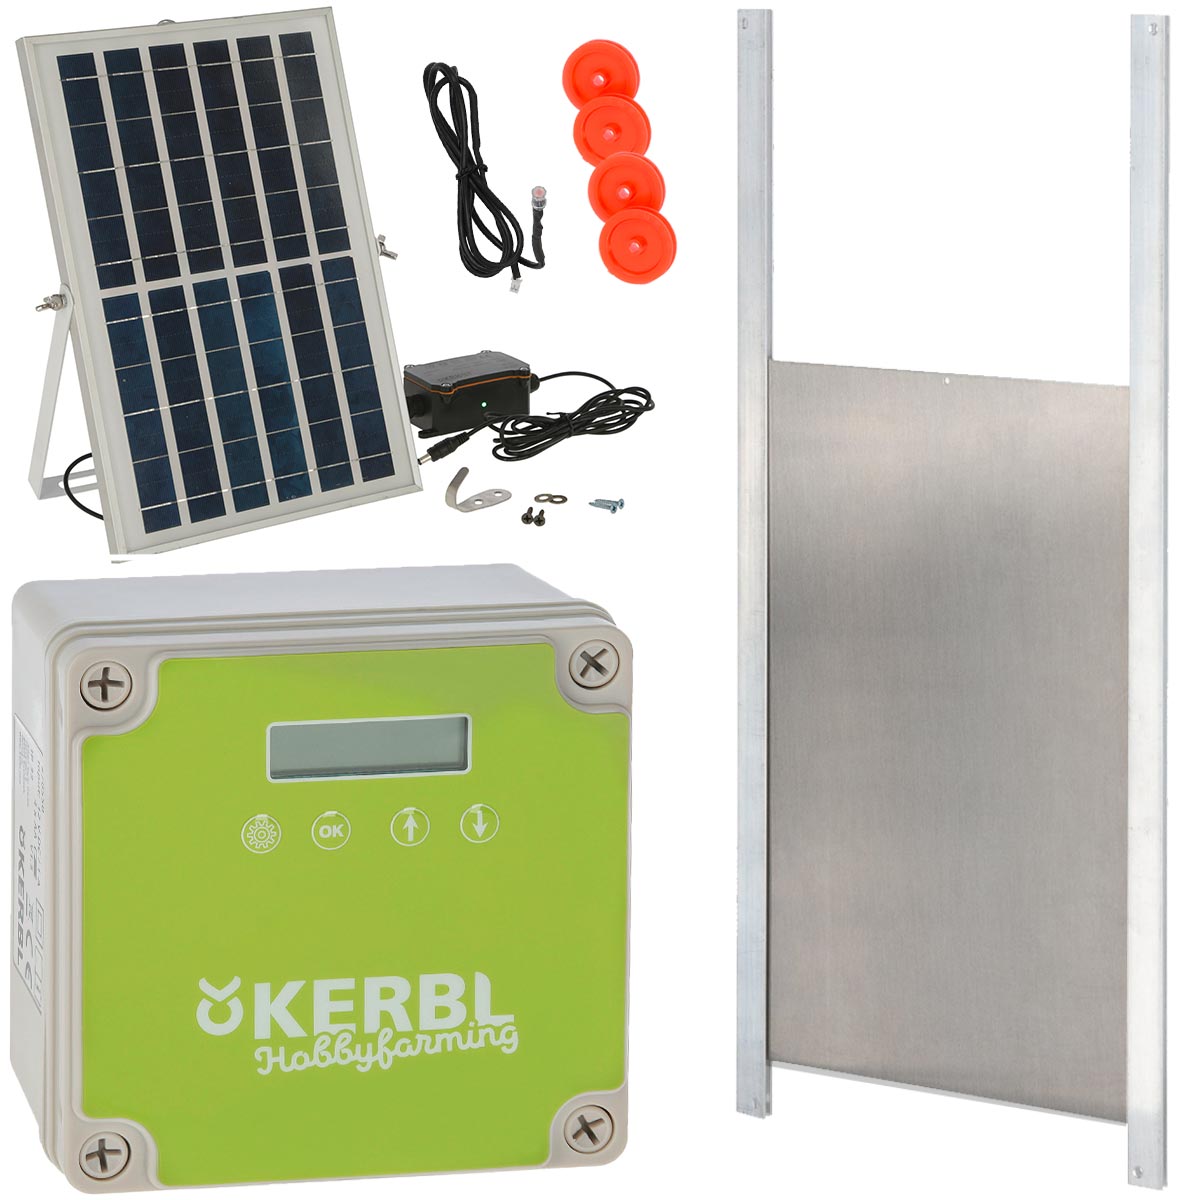 Kerbl Porta automatica per pollaio fotovoltaica 30 x 40 cm